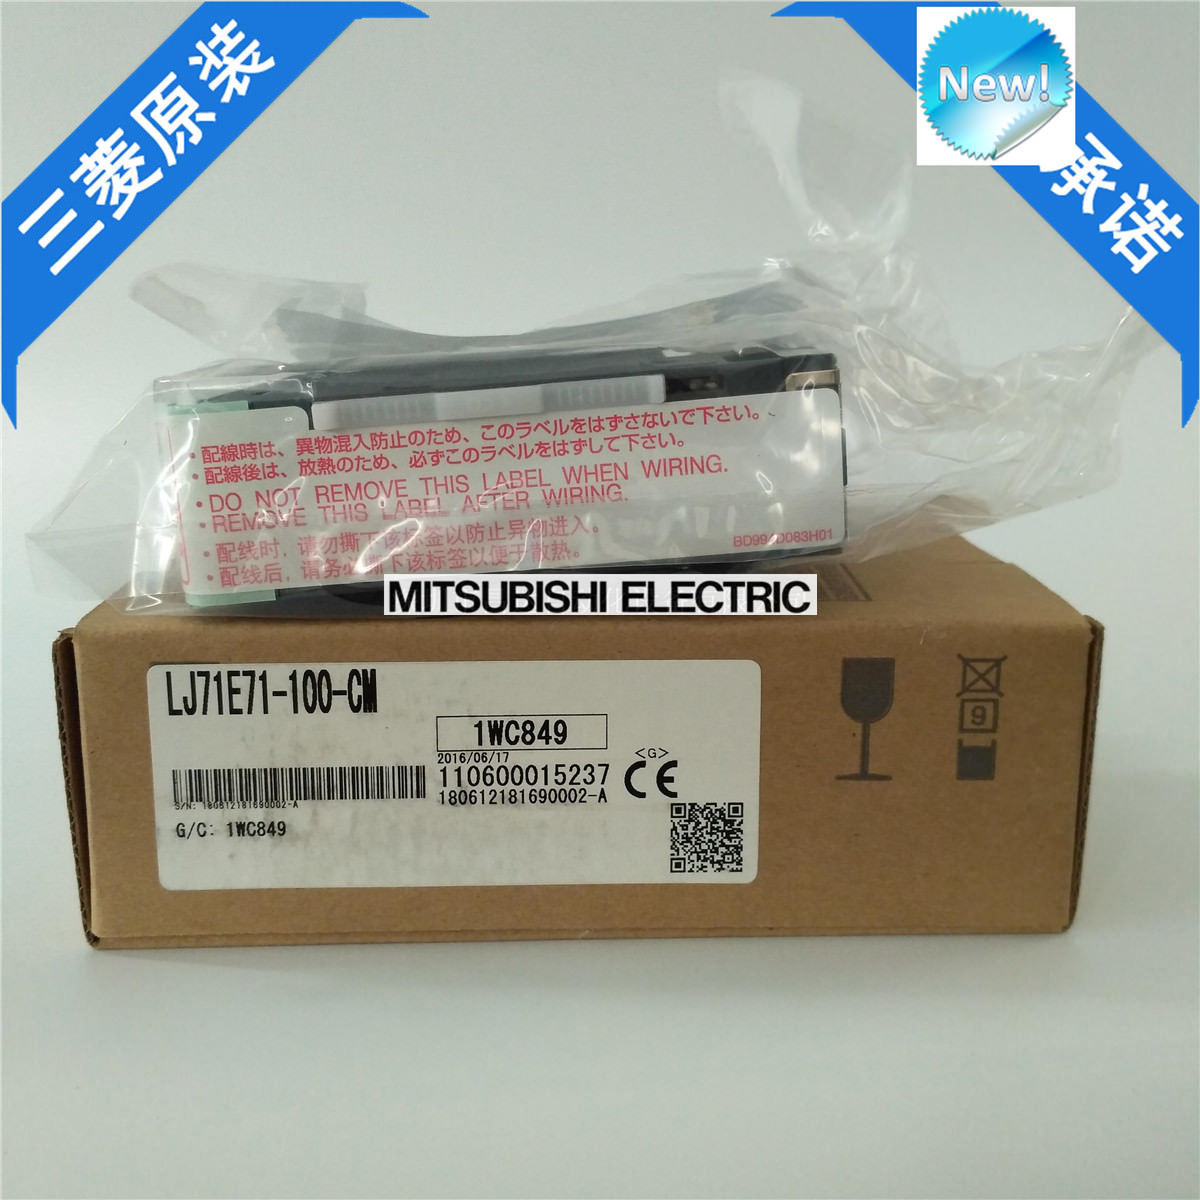 New Mitsubishi PLC LJ71E71-100-CM In Box LJ71E71100CM